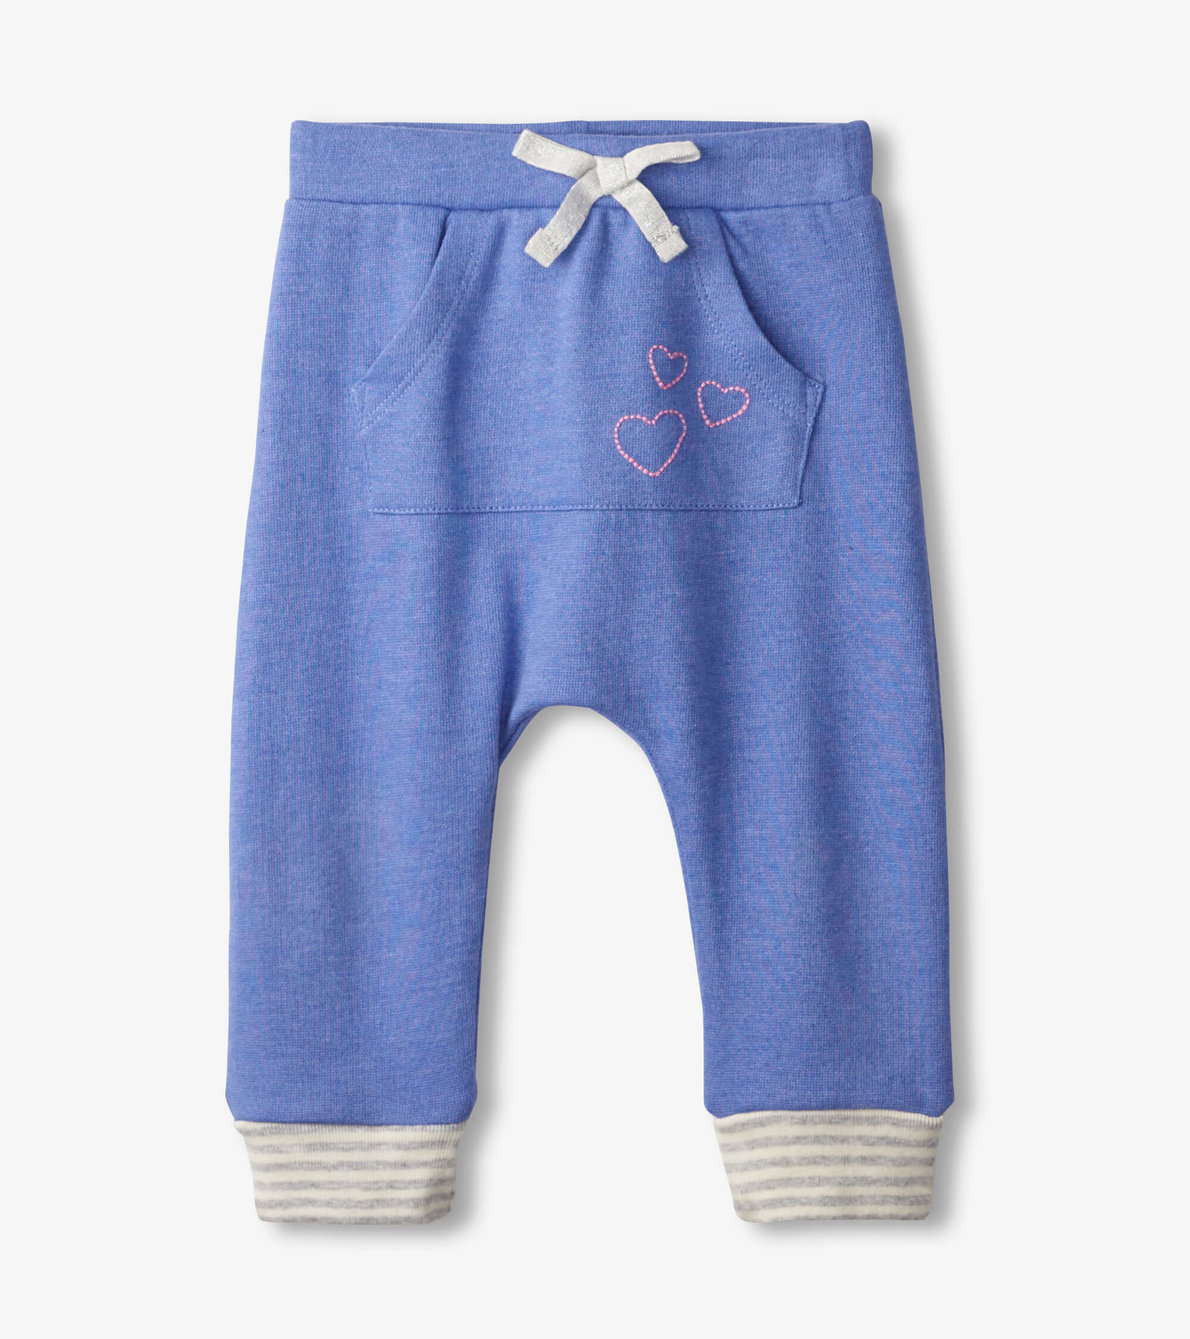 View larger image of Blue Melange Baby Kanga Pants